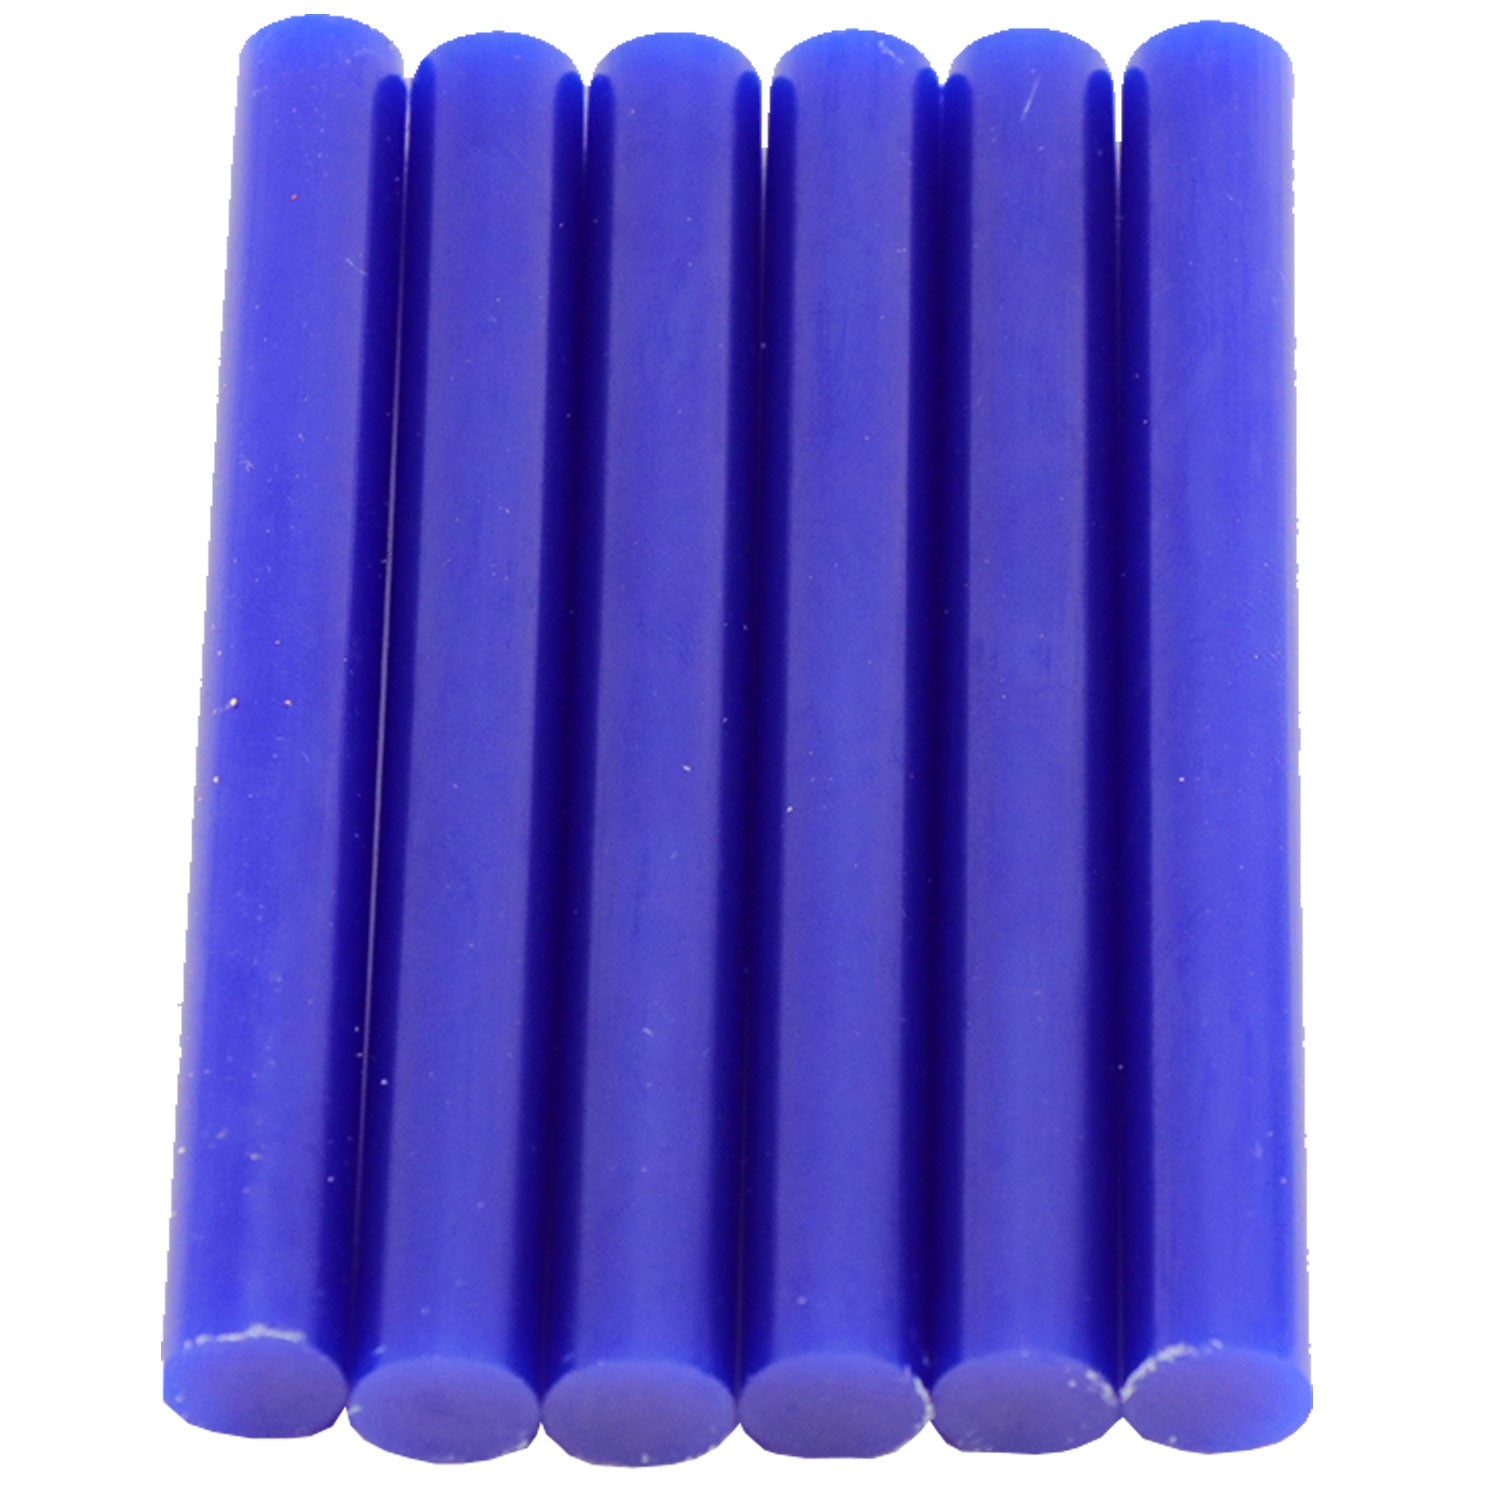 Blue Hot Glue Sticks Full Size - 12 Count